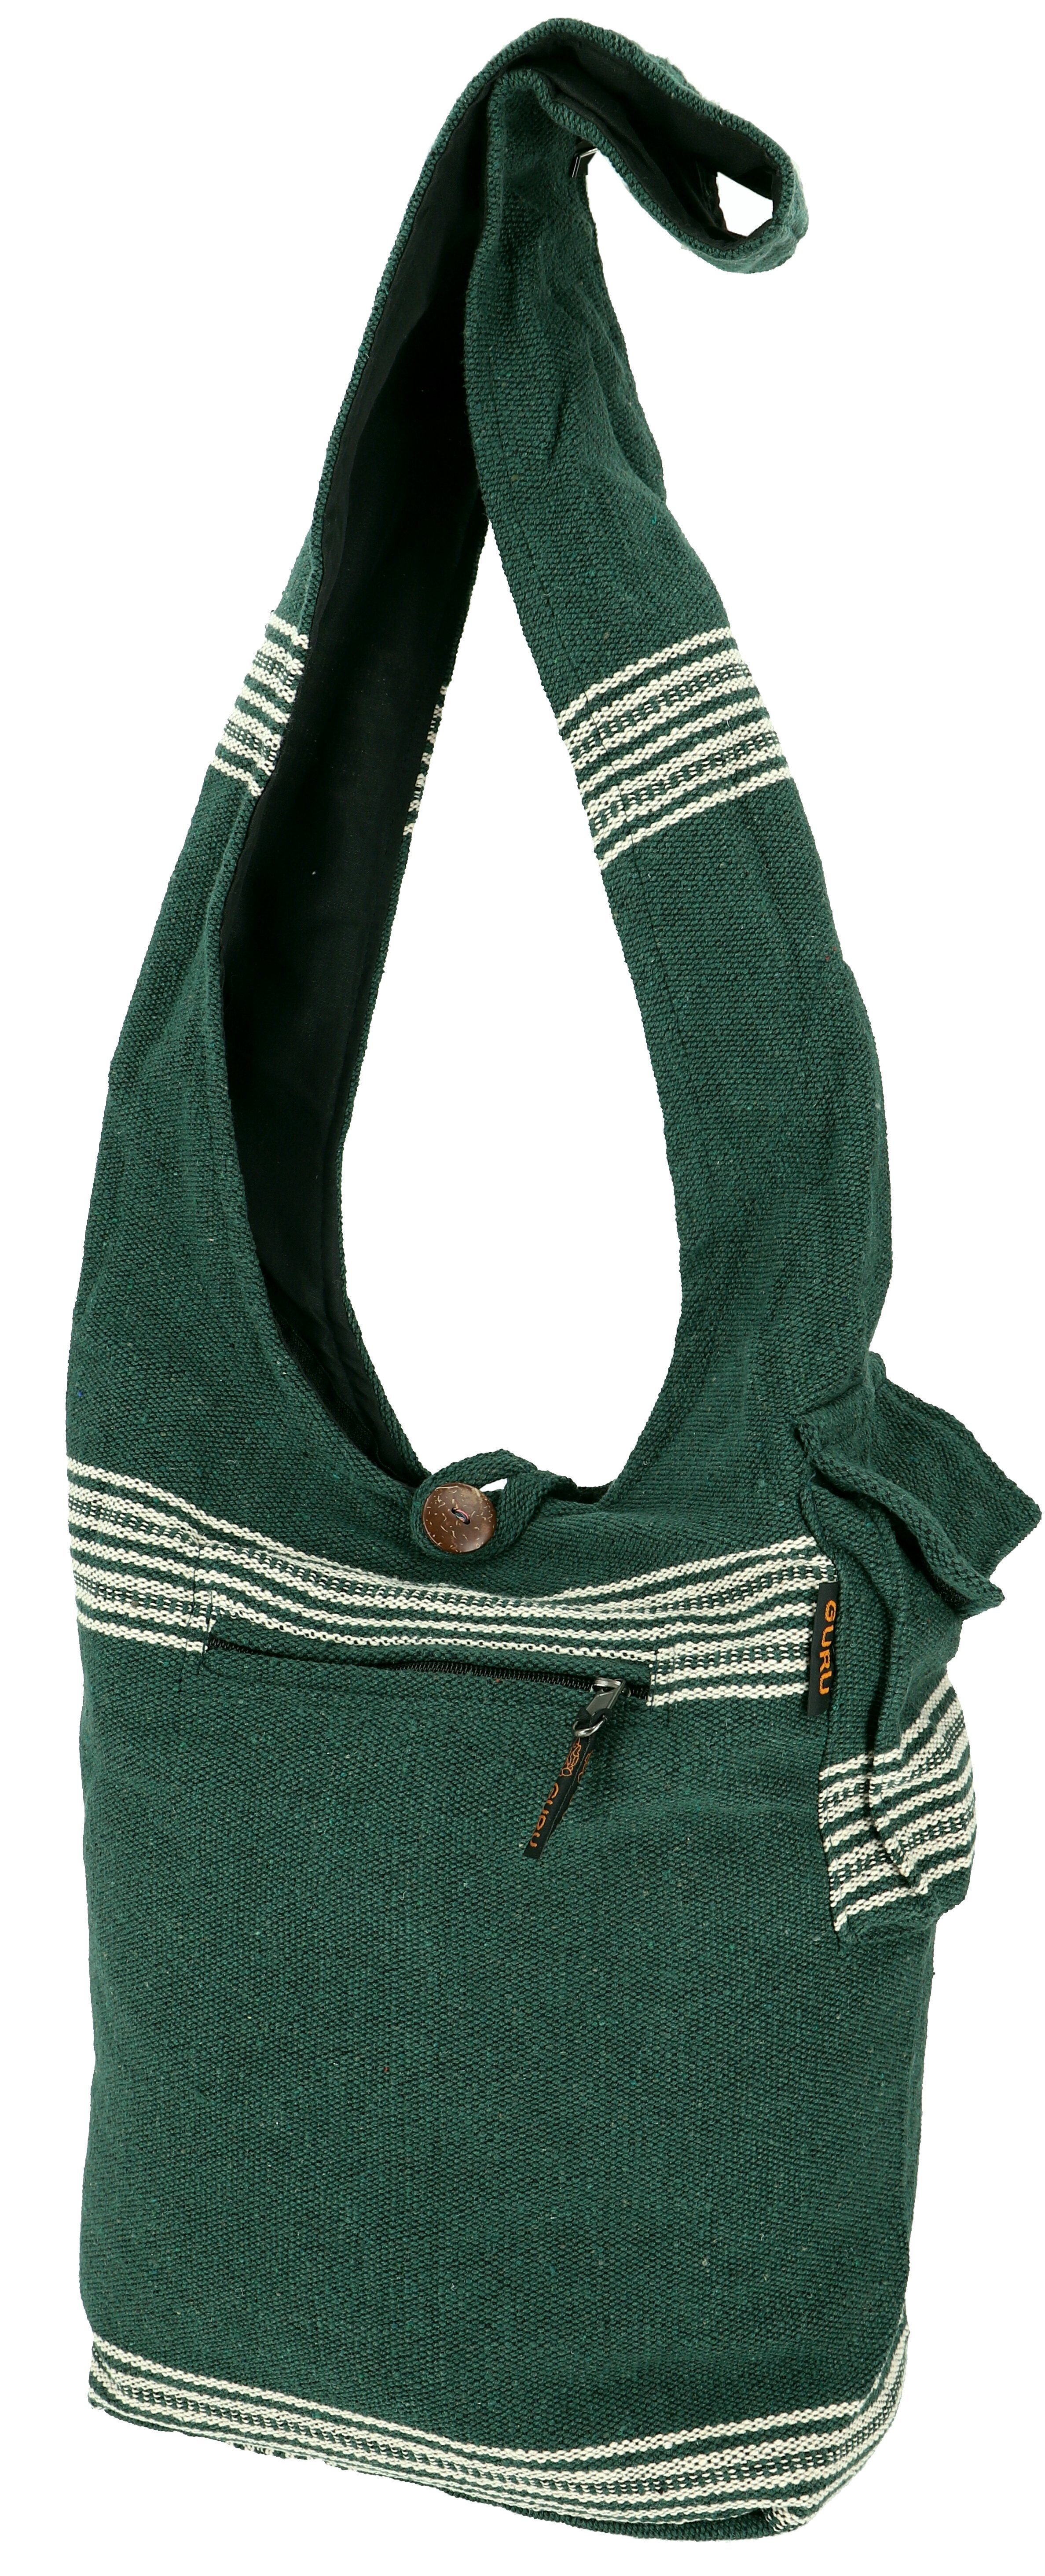 Schultertasche Ethno - Nepal 11 Guru-Shop Modell Tasche Schulterbeutel,